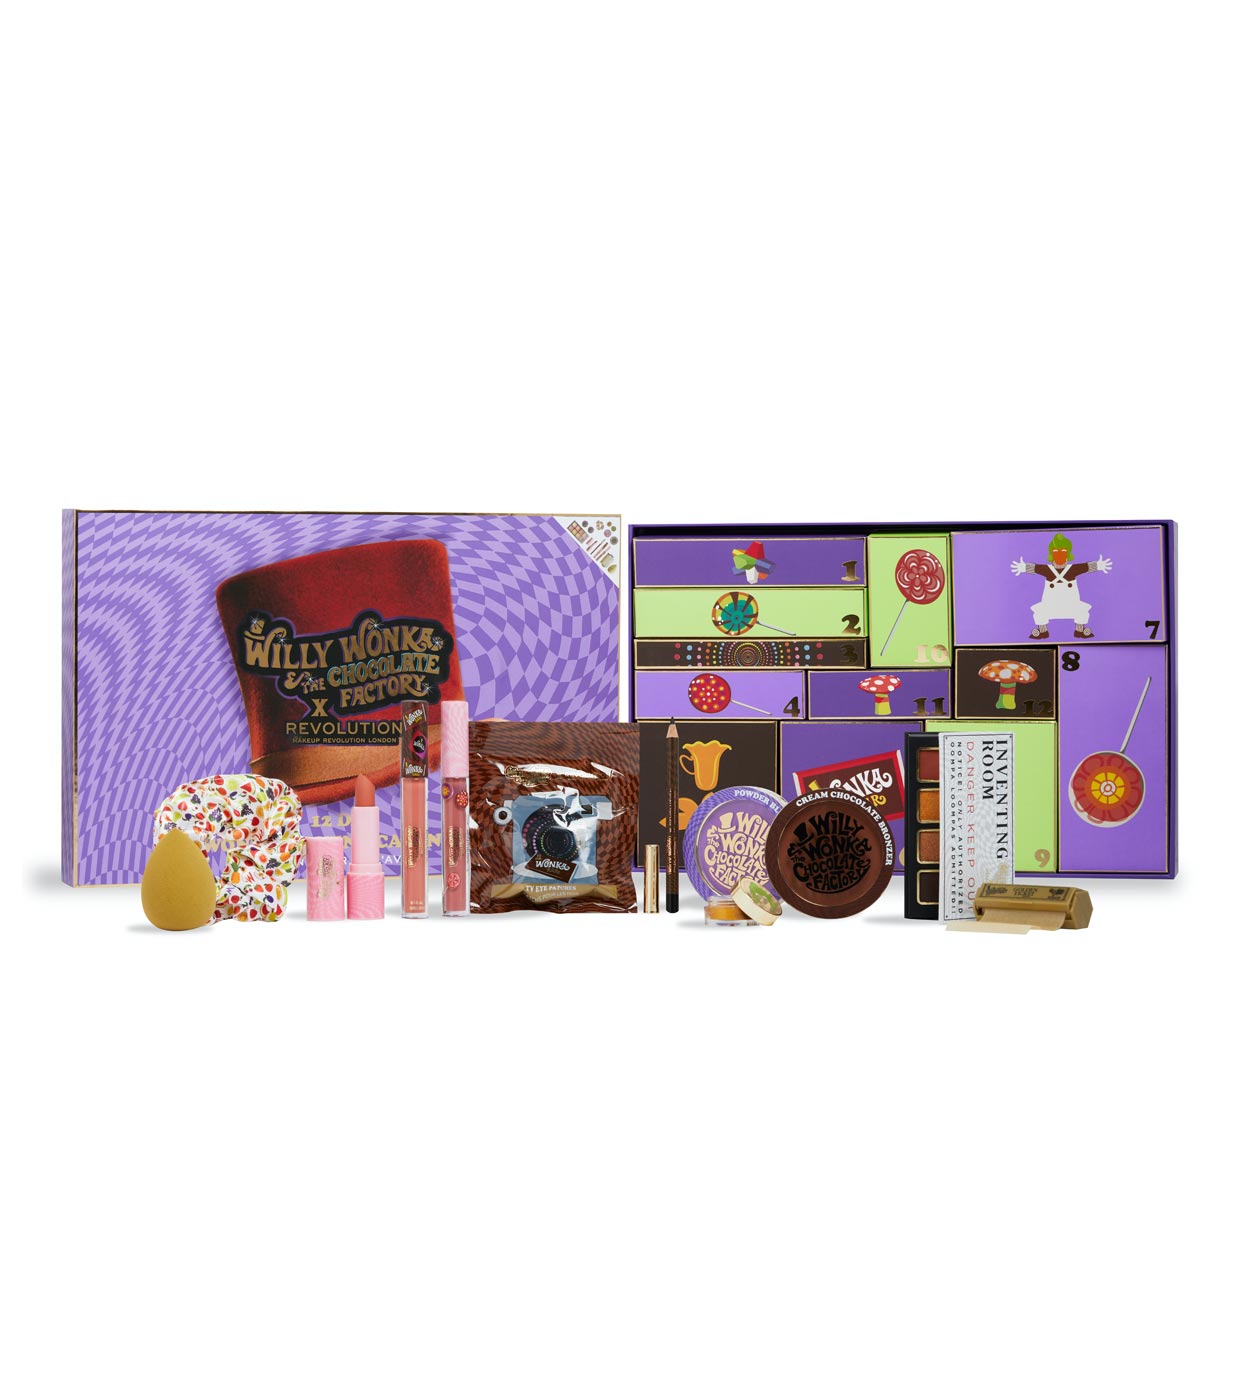 Revolution - *Willy Wonka & The chocolate factory* - Calendário do Advento 12 dias